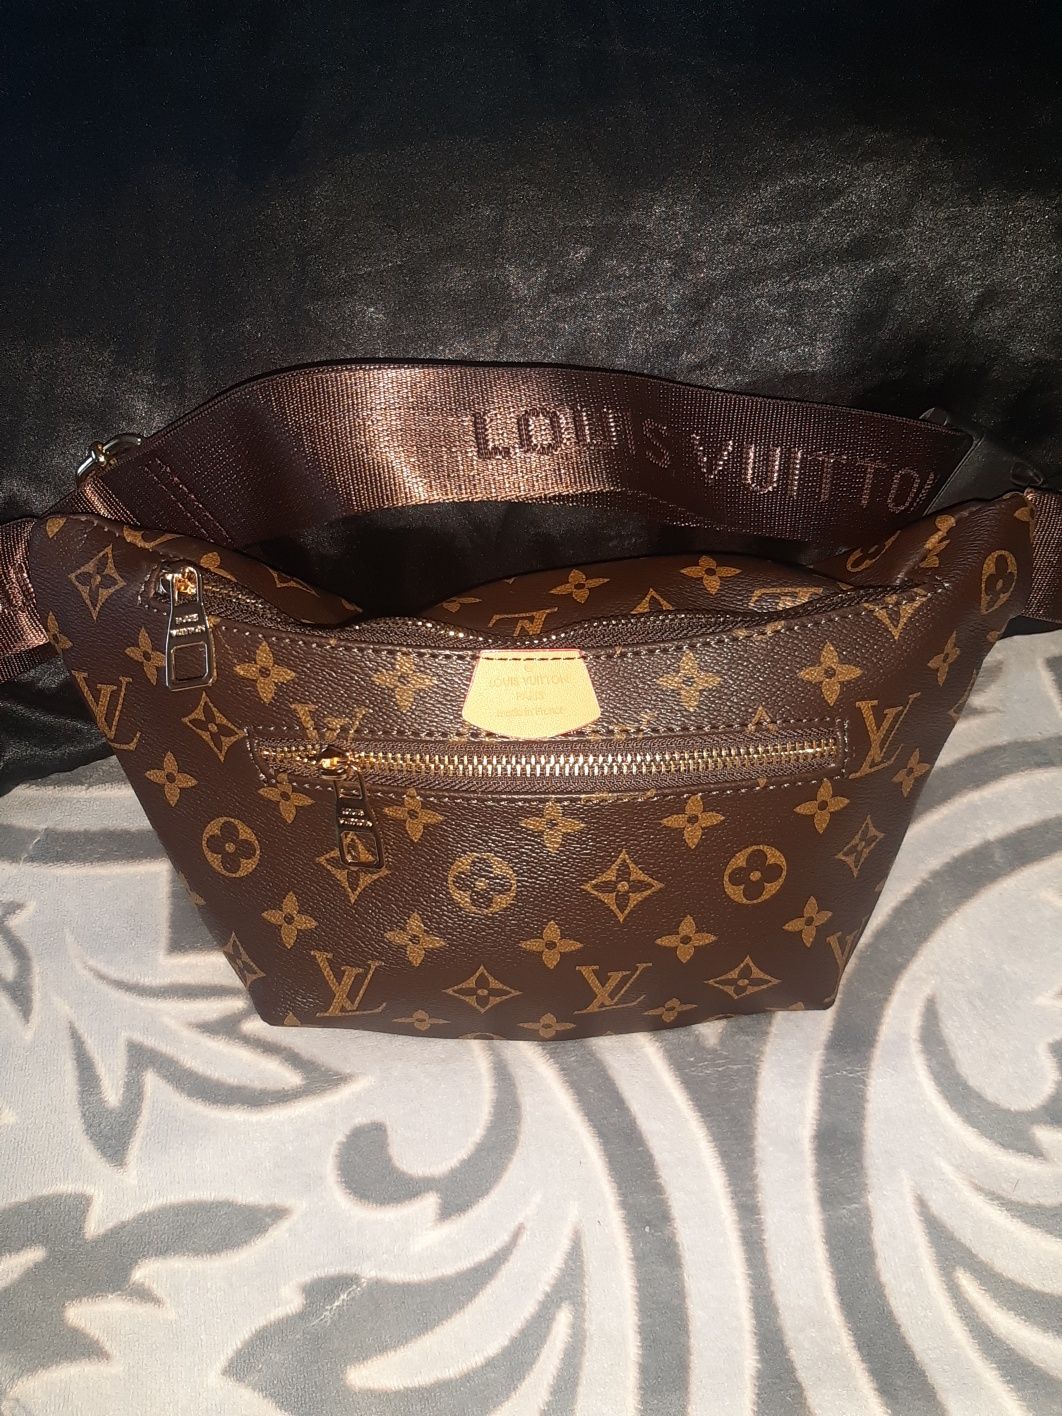 Cintura Louis Vuitton